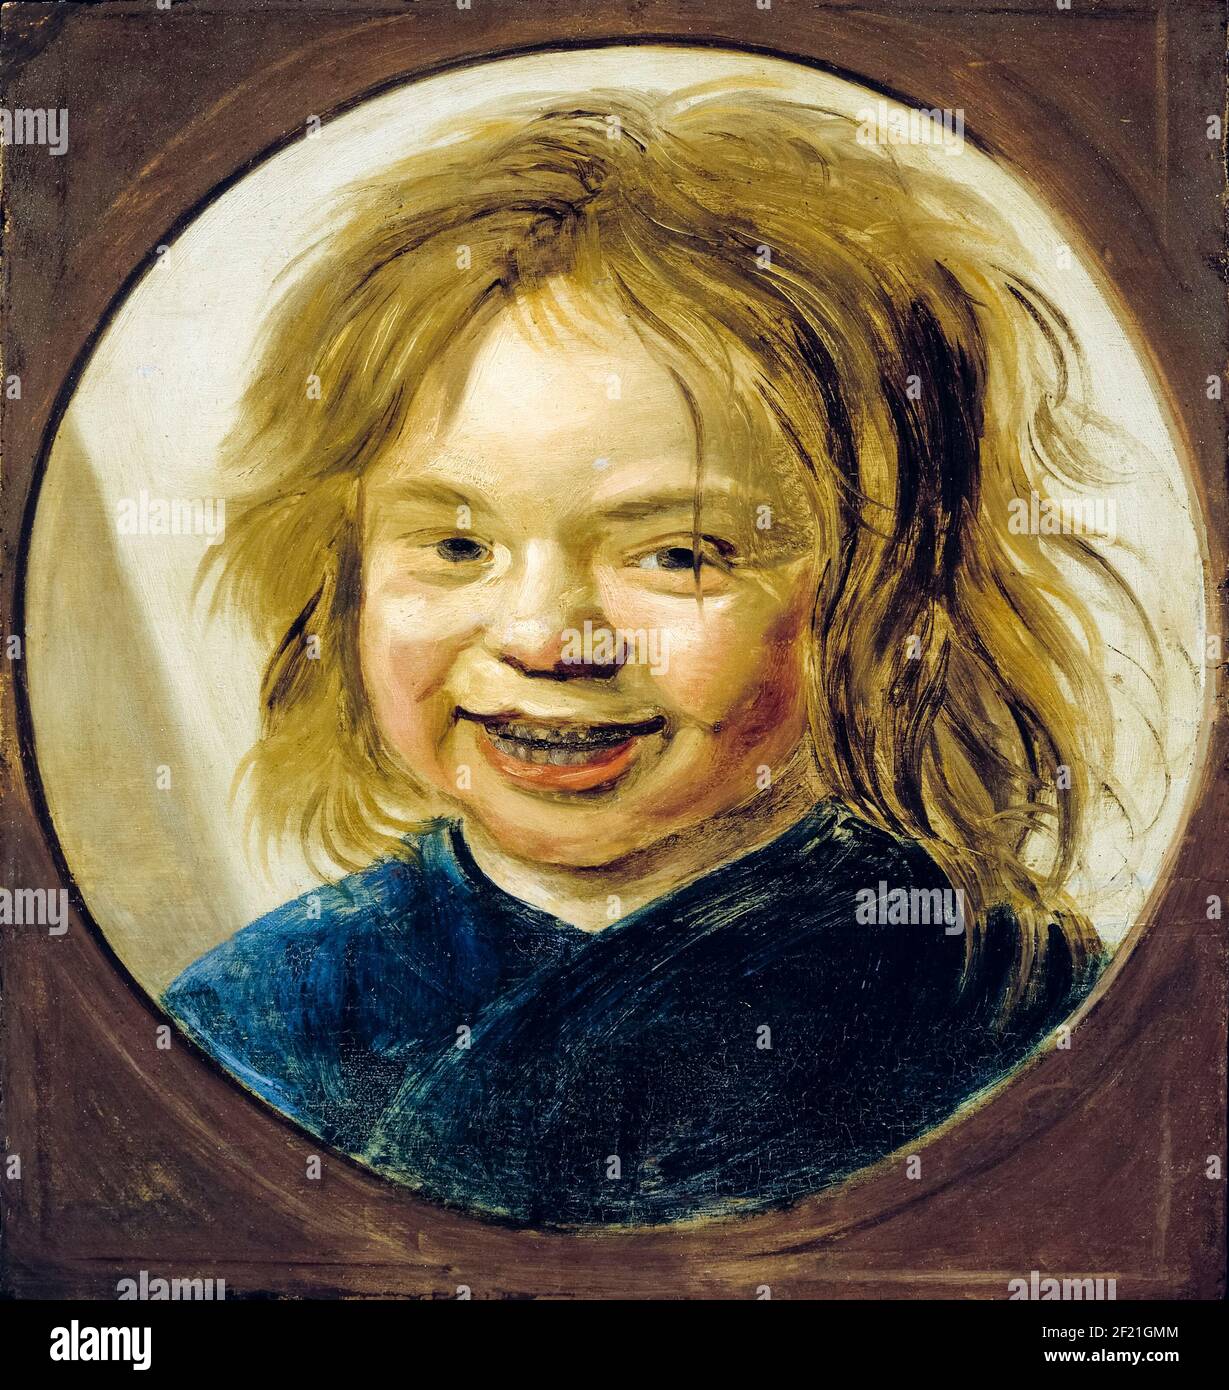 Lachender Junge, Portraitmalerei von Frans Hals, vor 1666 Stockfoto